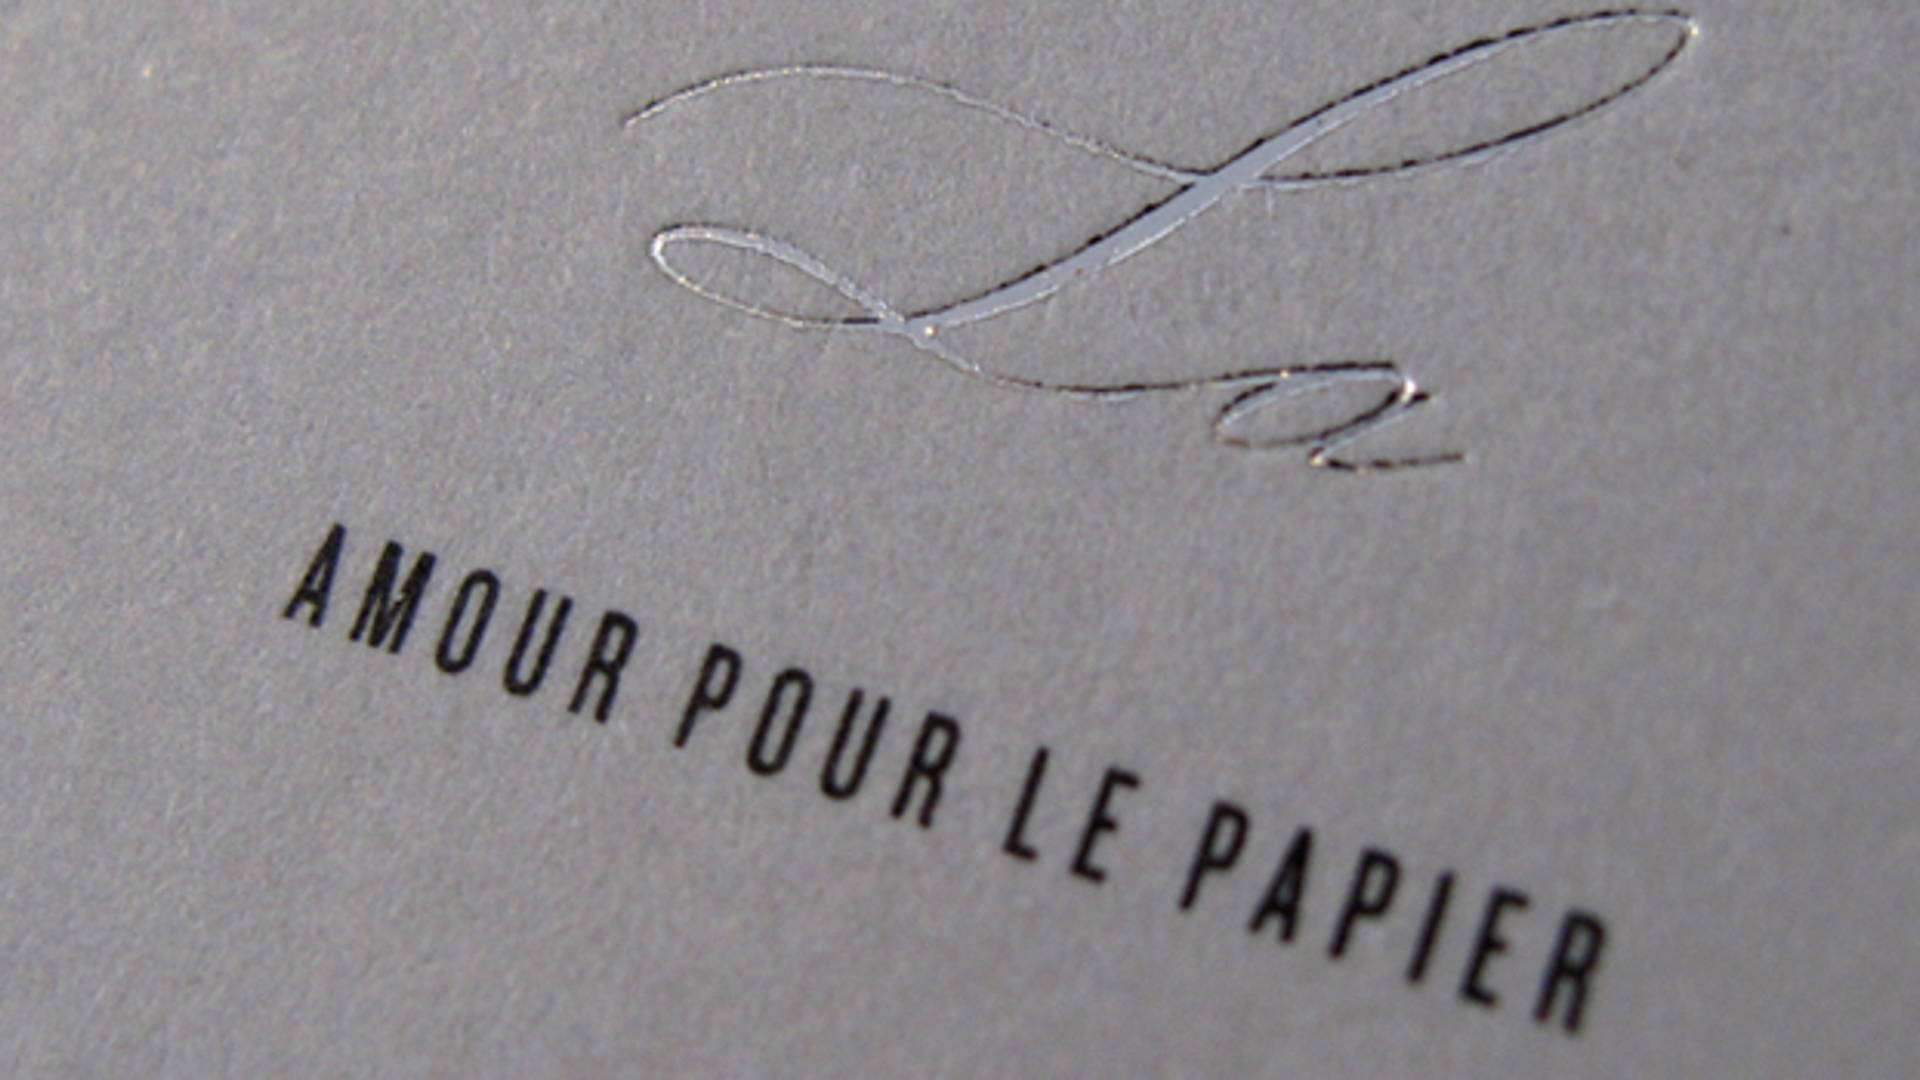 Featured image for LA - Amour pour le papier